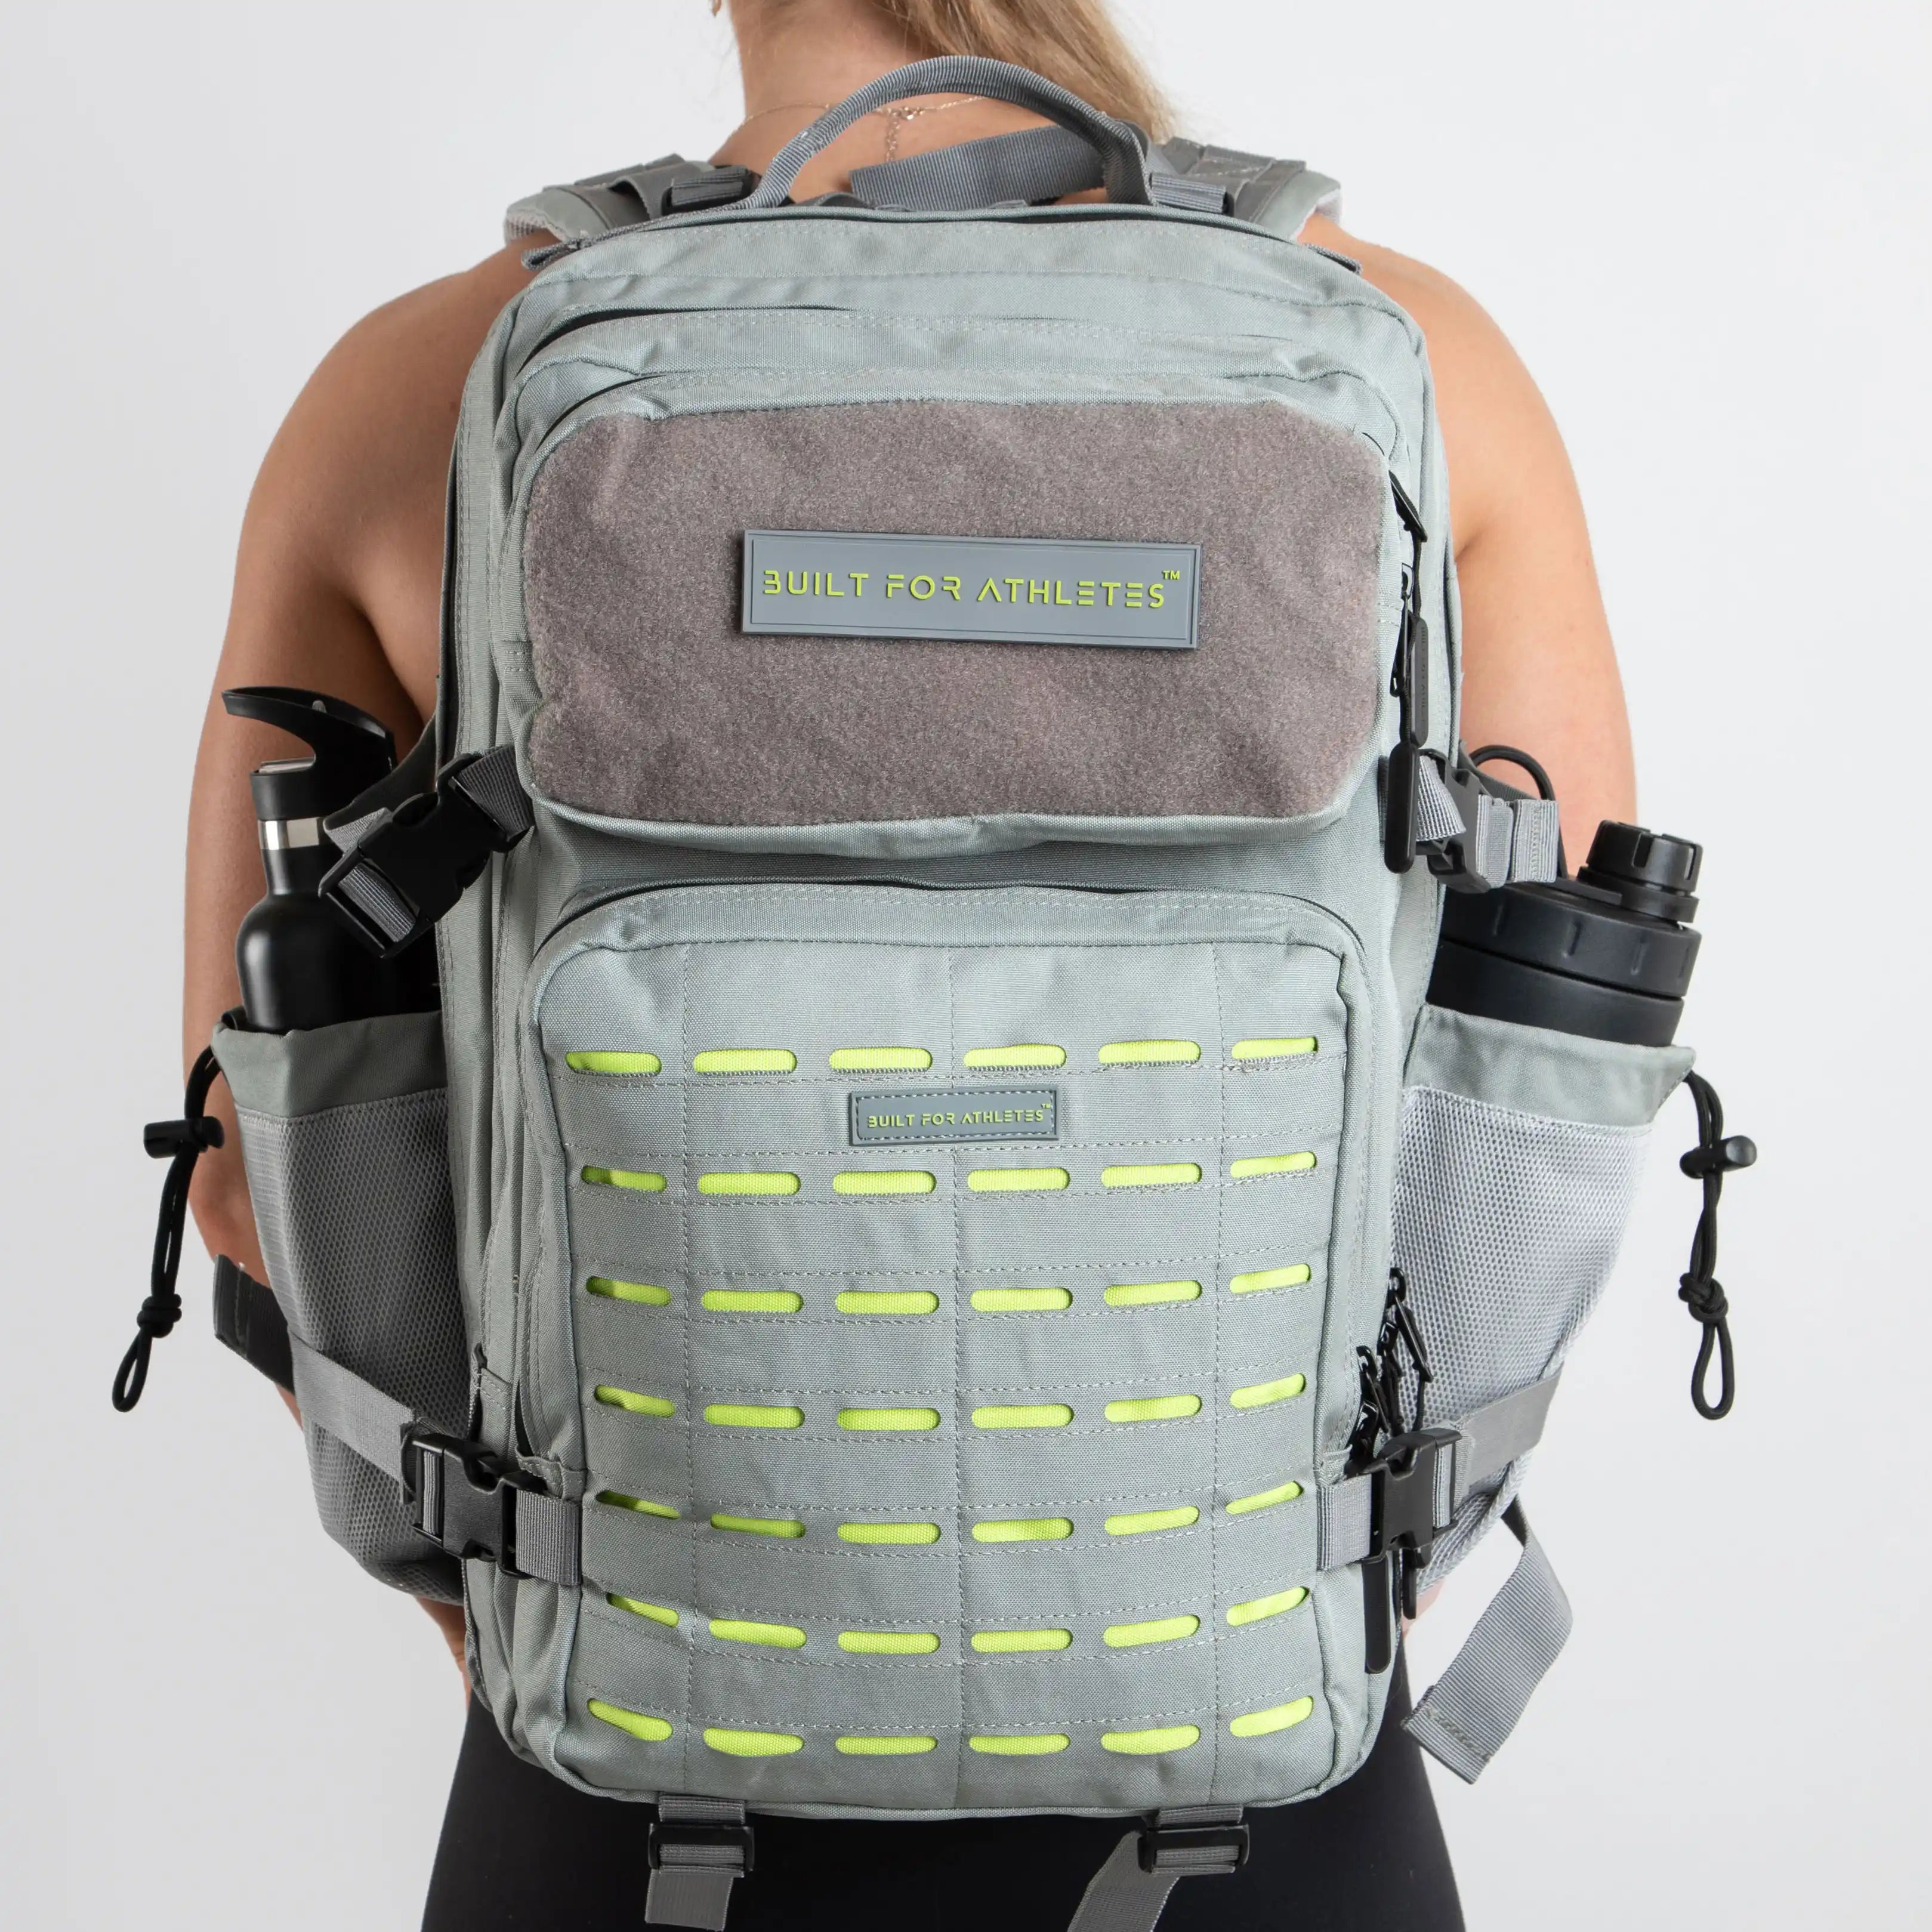 Built for Athletes Backpacks Large Grey & Lime Gym Backpack